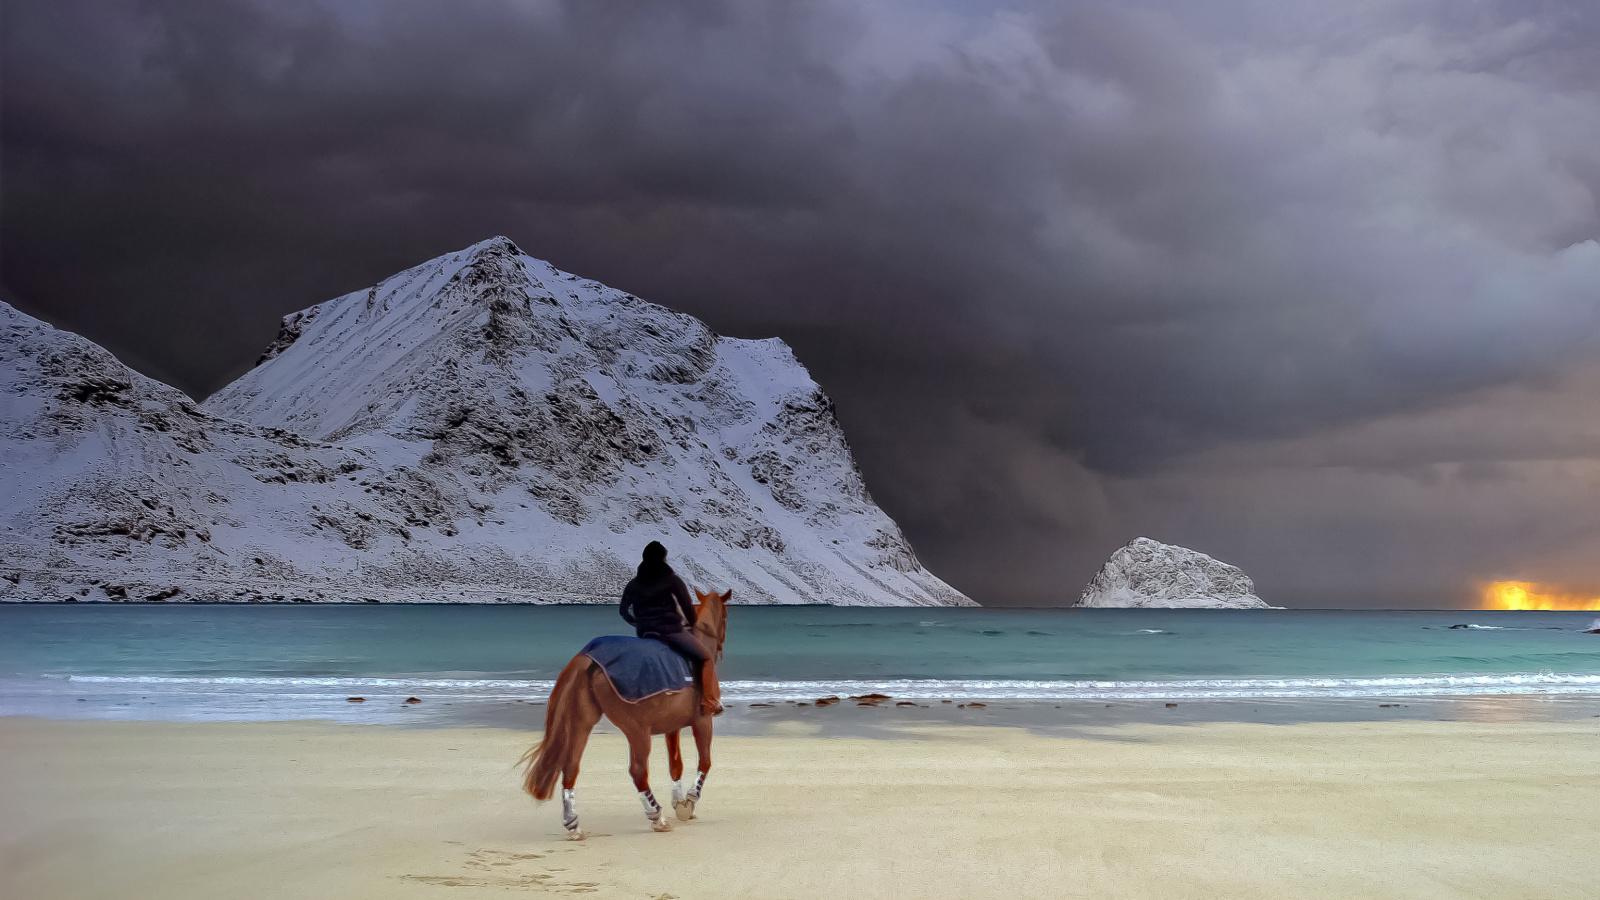 Das Horse on beach Wallpaper 1600x900